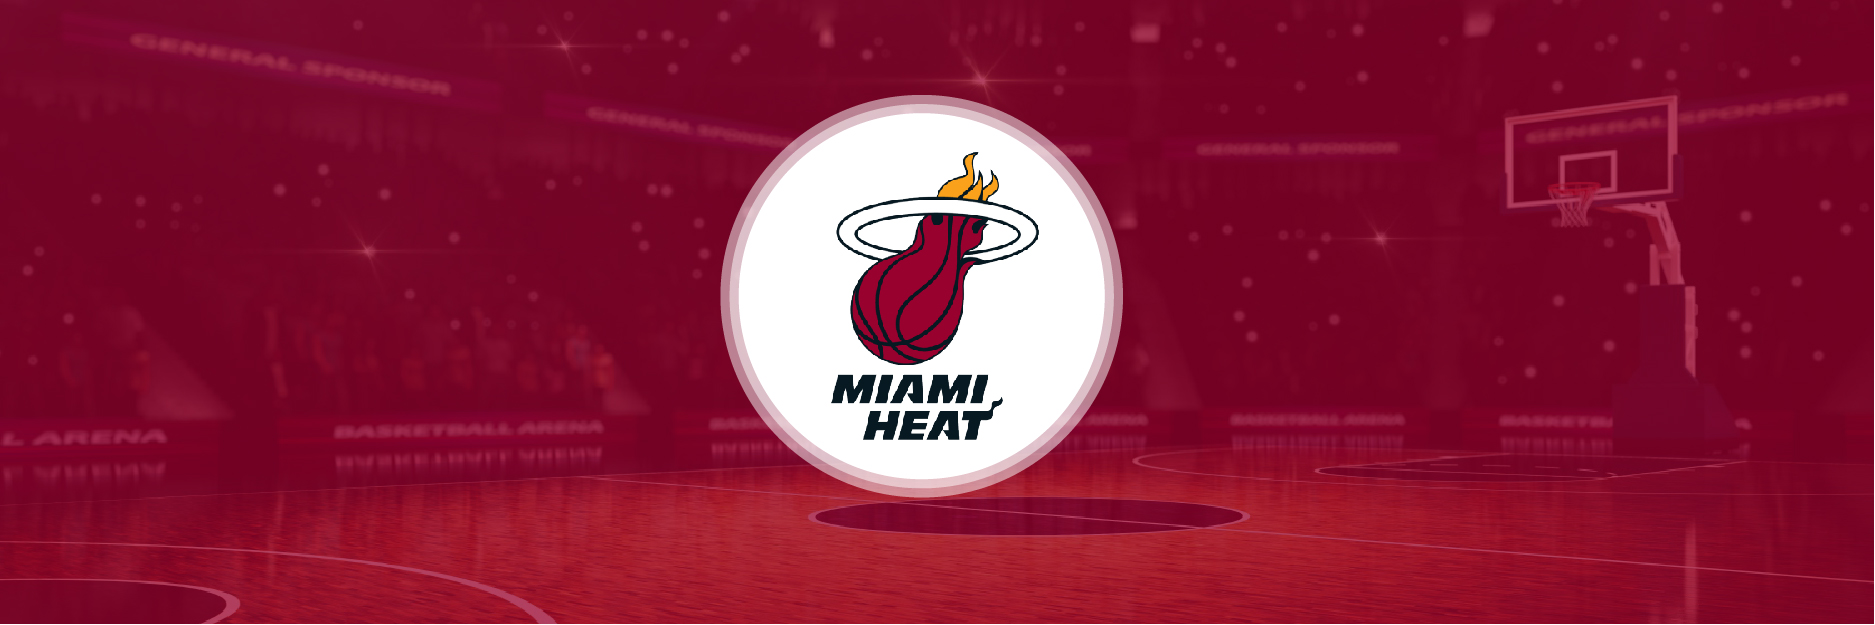 NBA Miami Heat 2020 Season Analysis